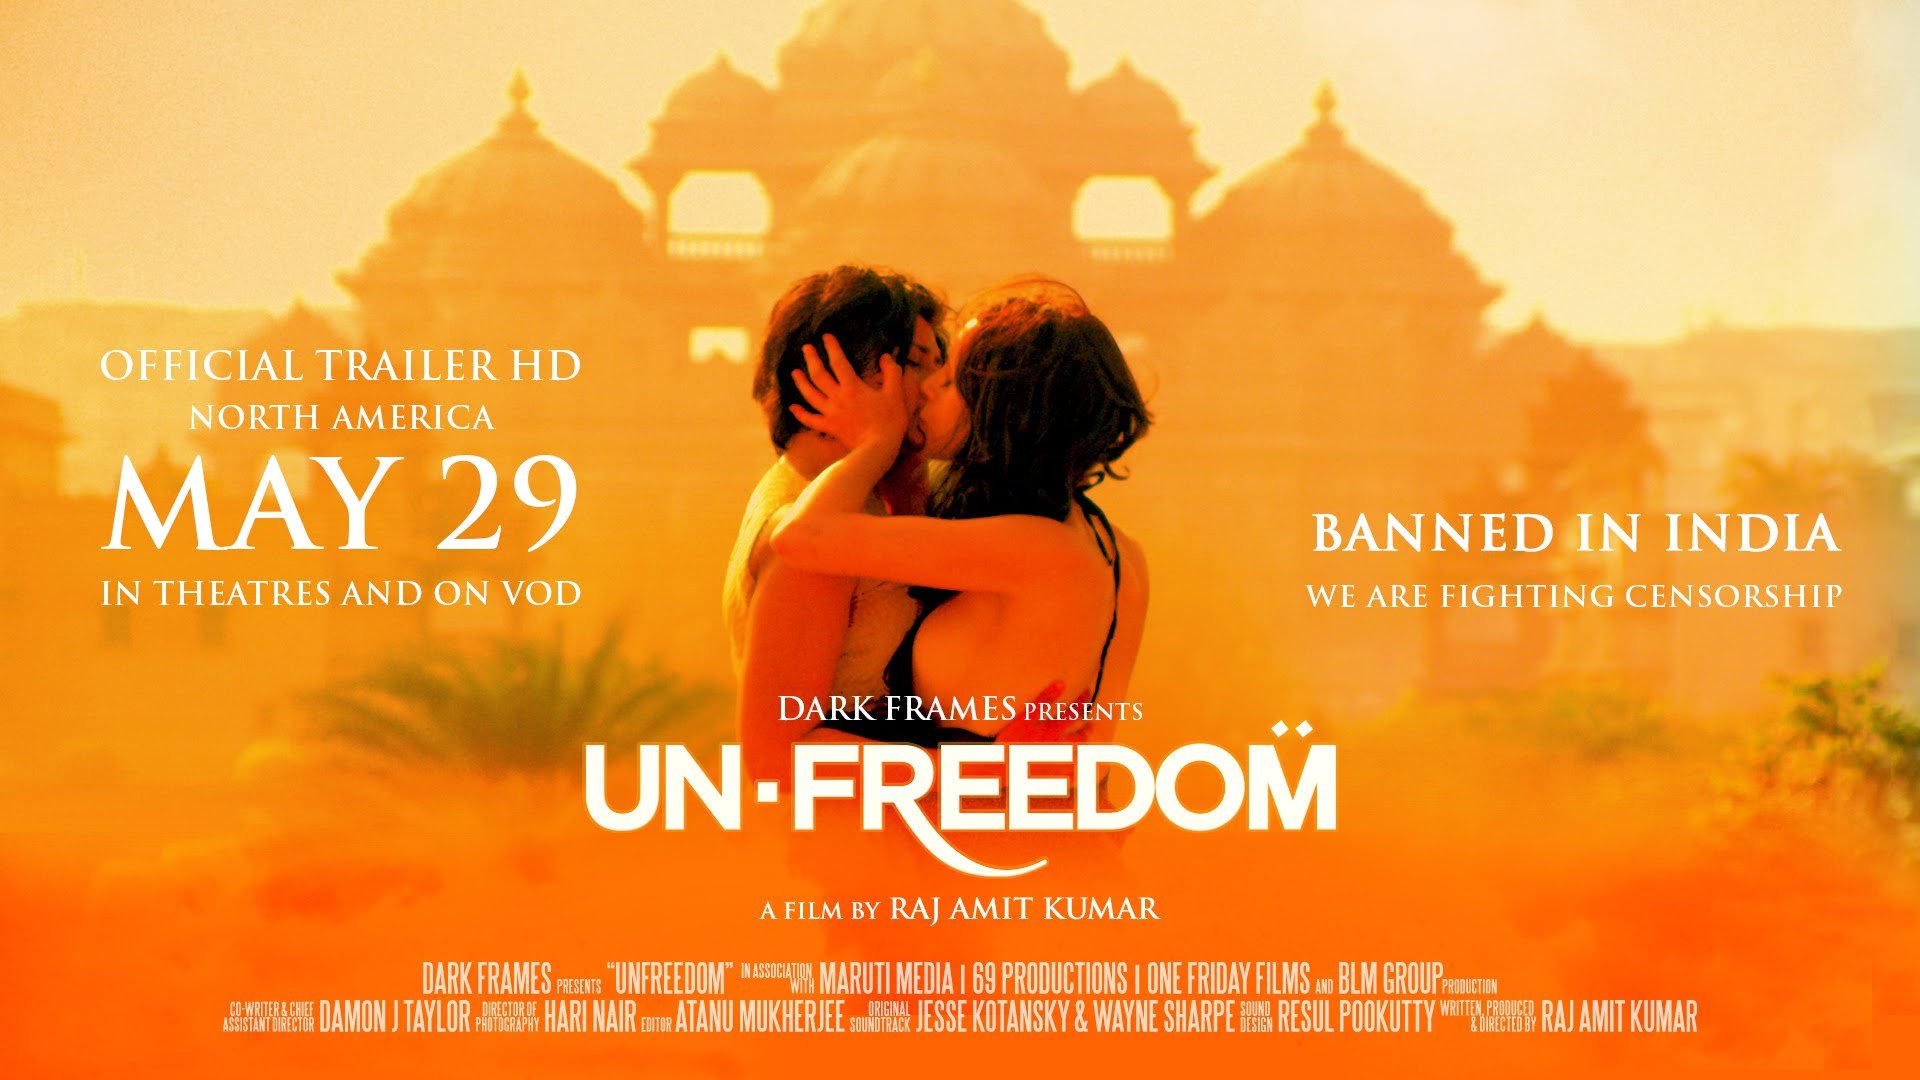 Film over lesbische relatie verboden in India